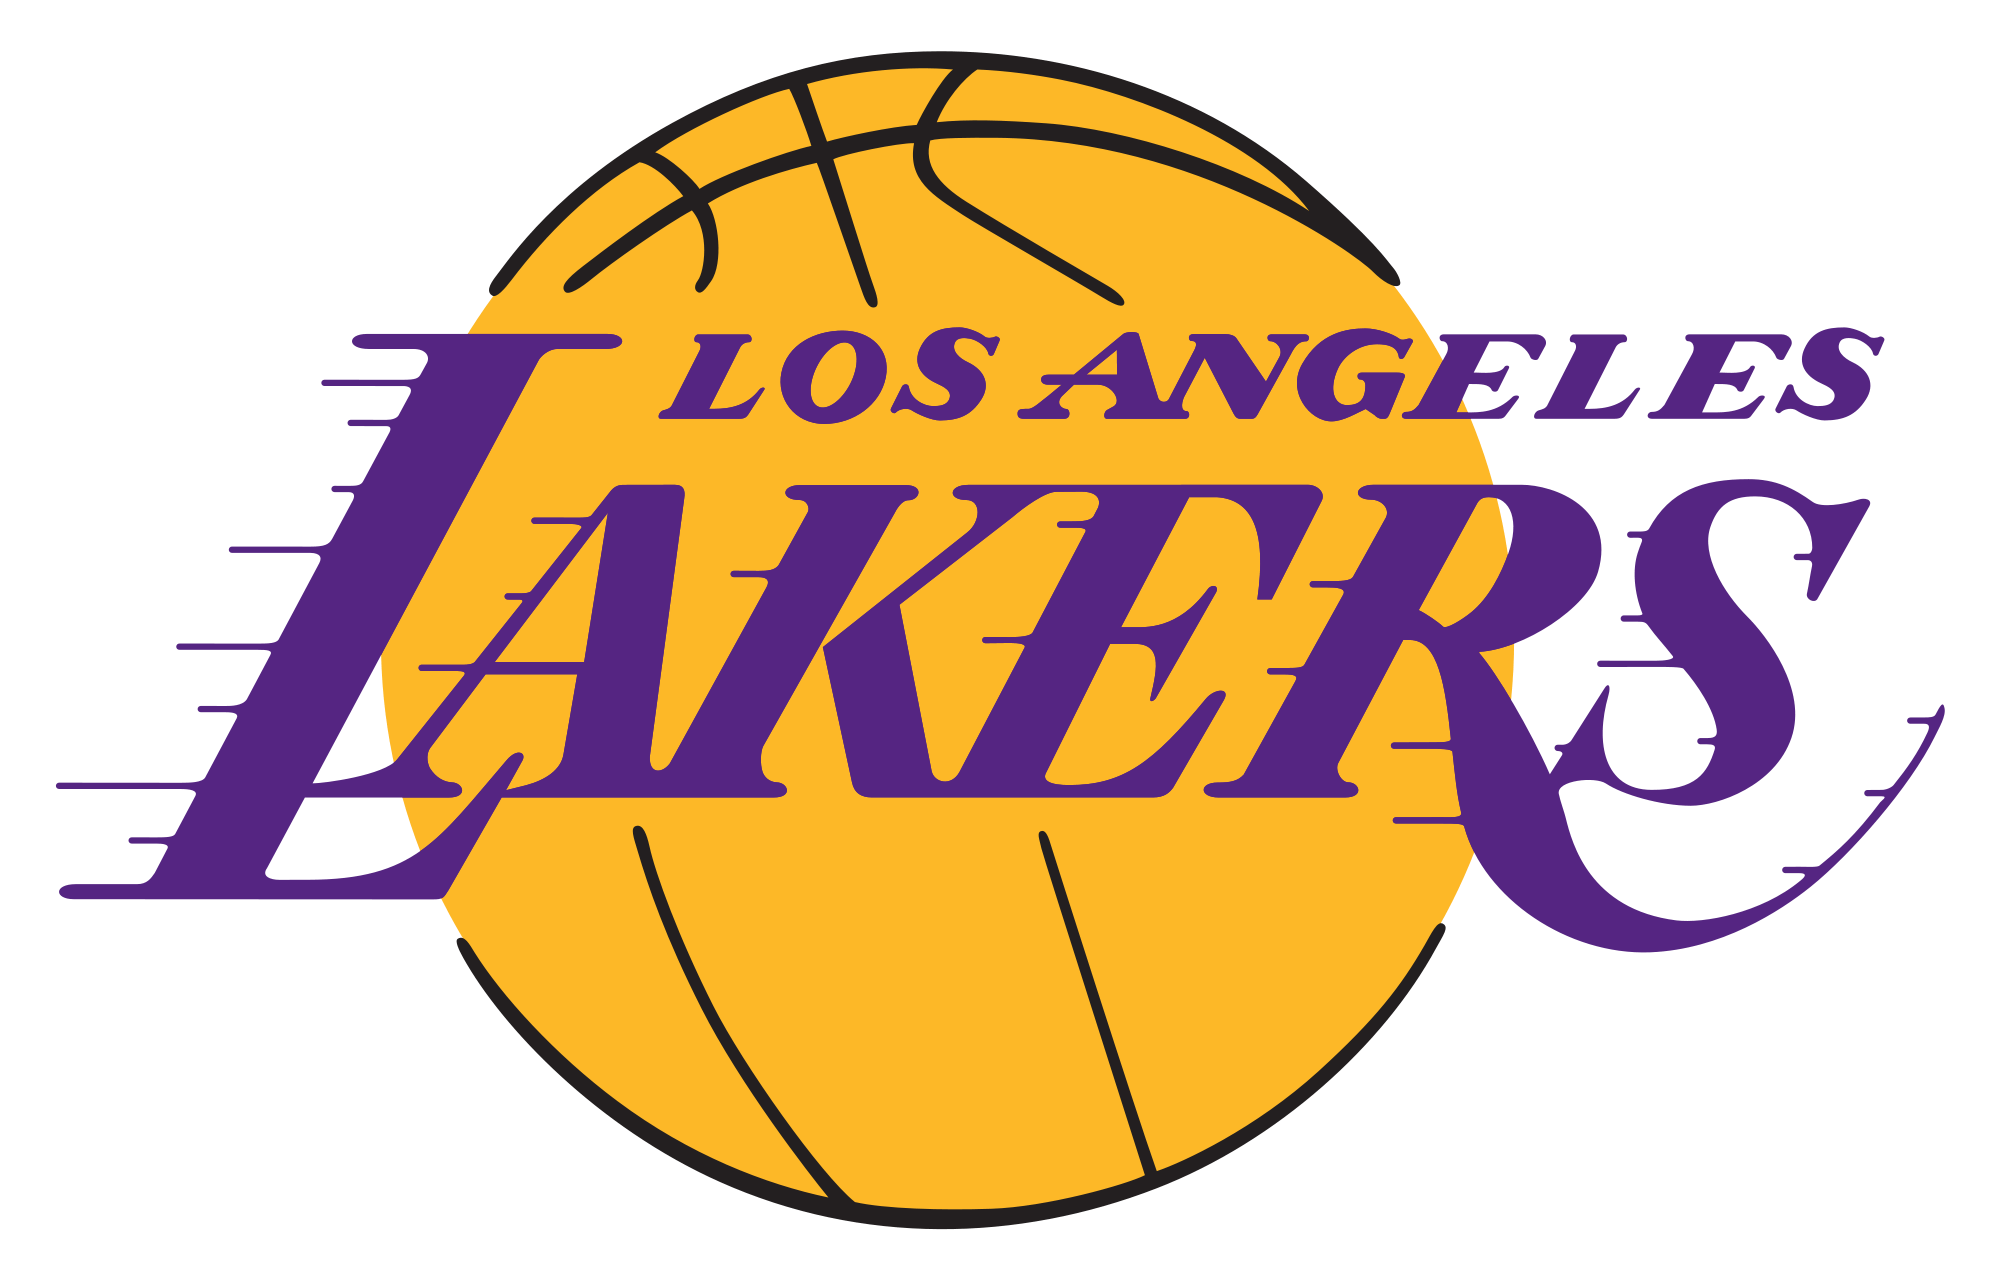 Los Angeles Lakers Logo NBA Basketball Team